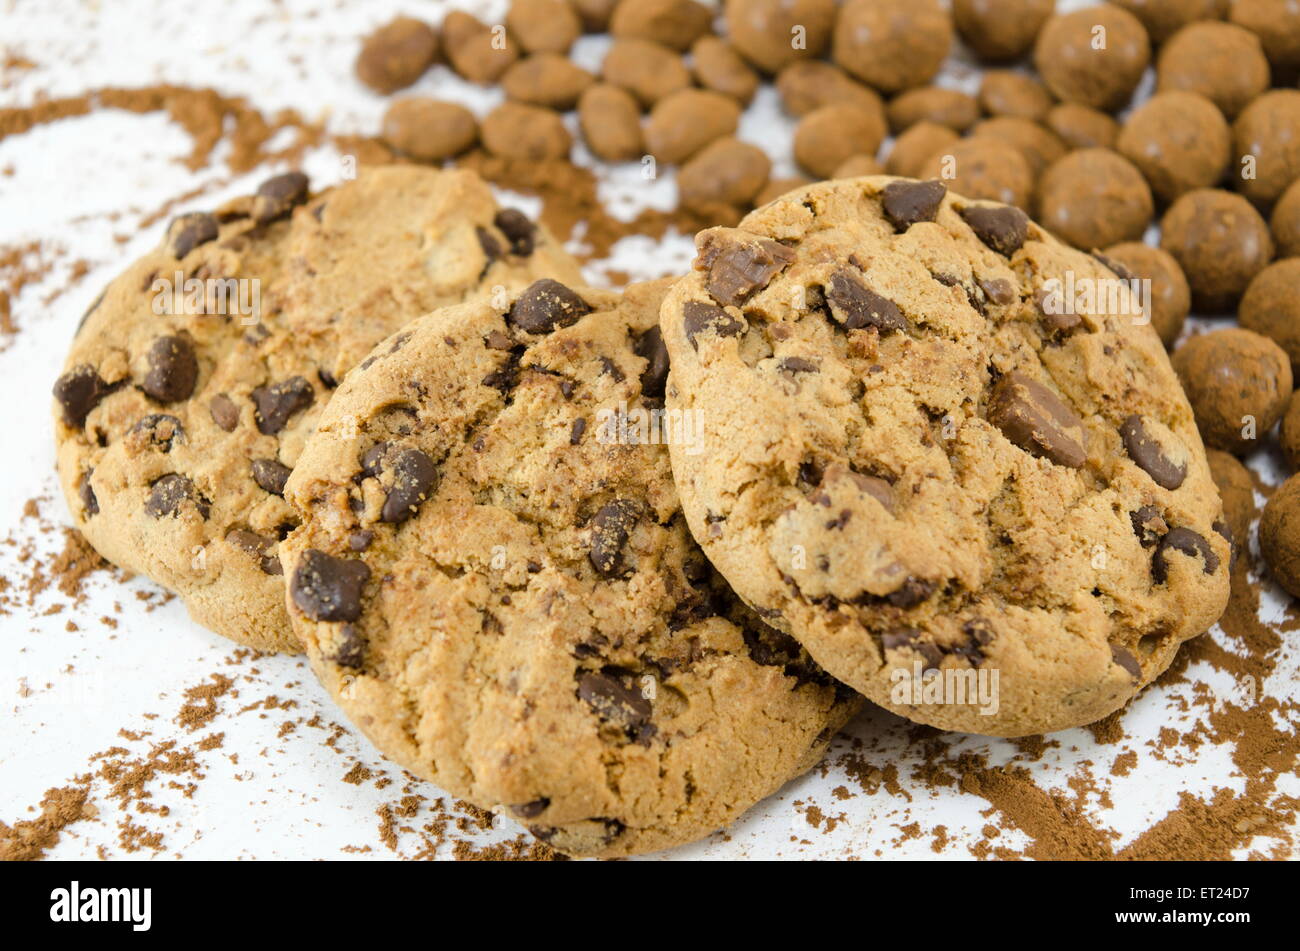 Cookies aux pépites de chocolat sur fond blanc avec des billes de chocolat Banque D'Images